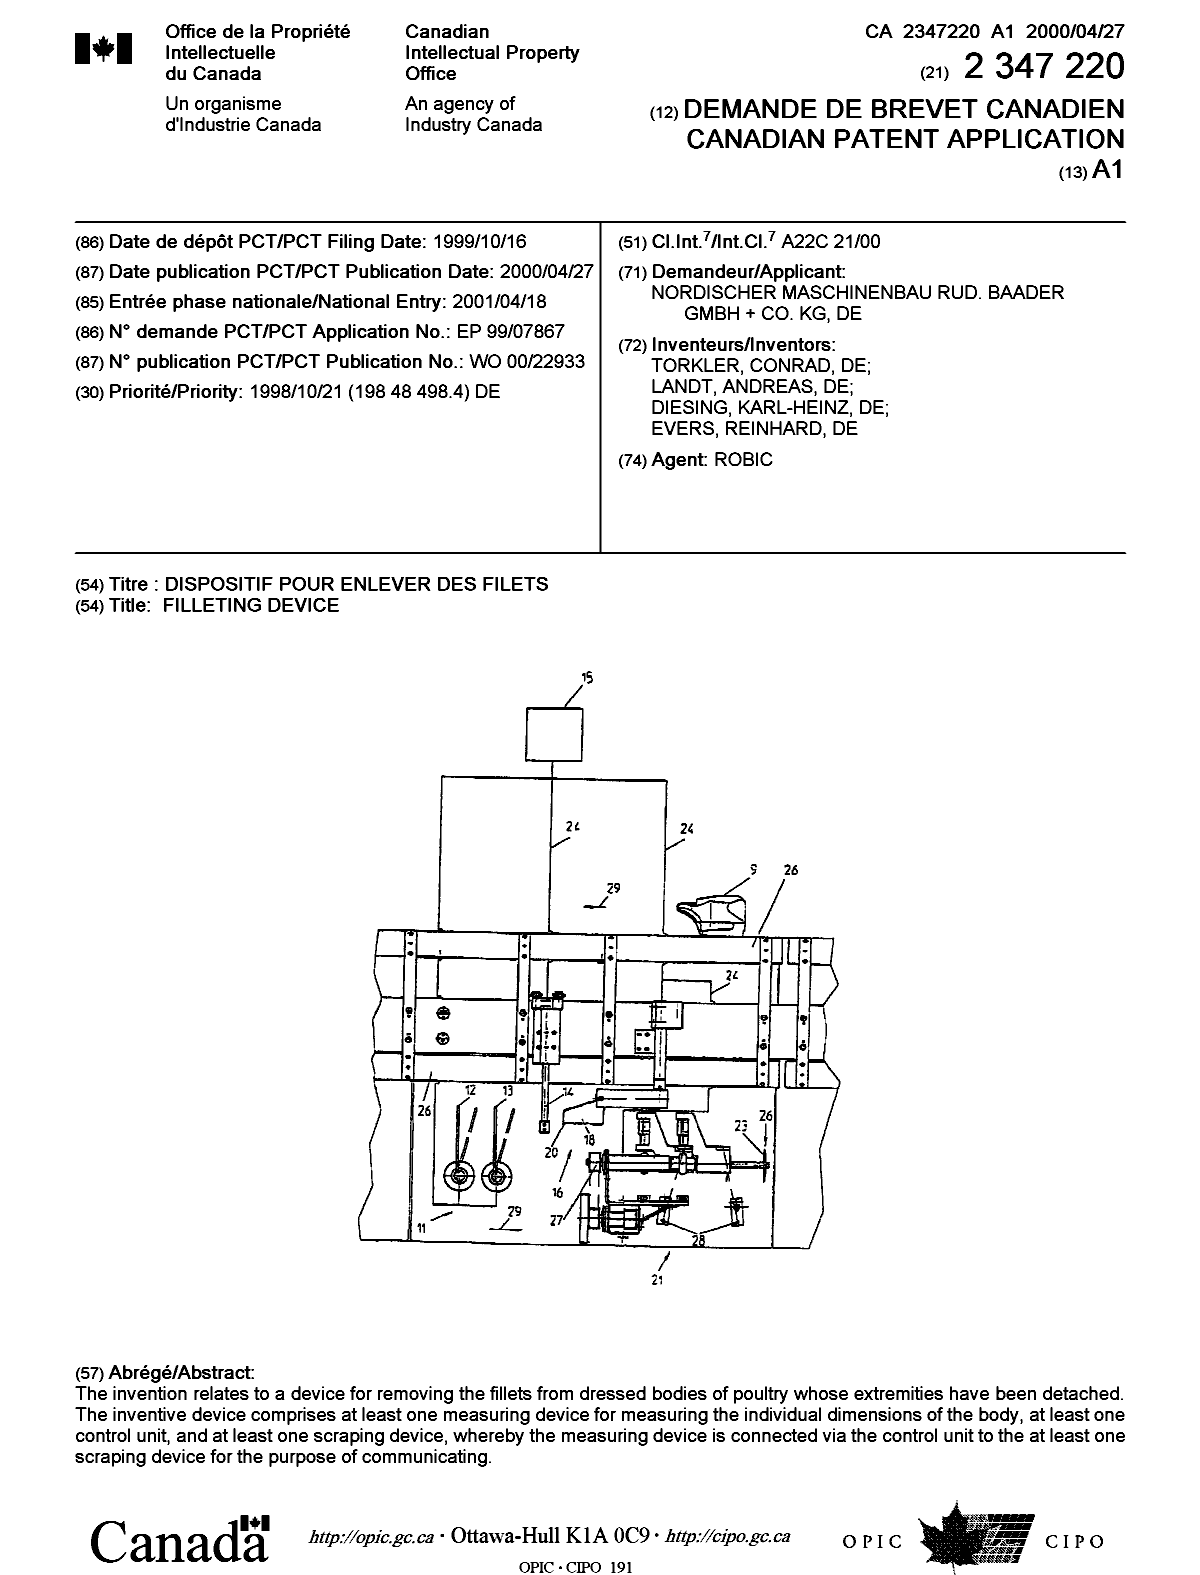 Document de brevet canadien 2347220. Page couverture 20010717. Image 1 de 1